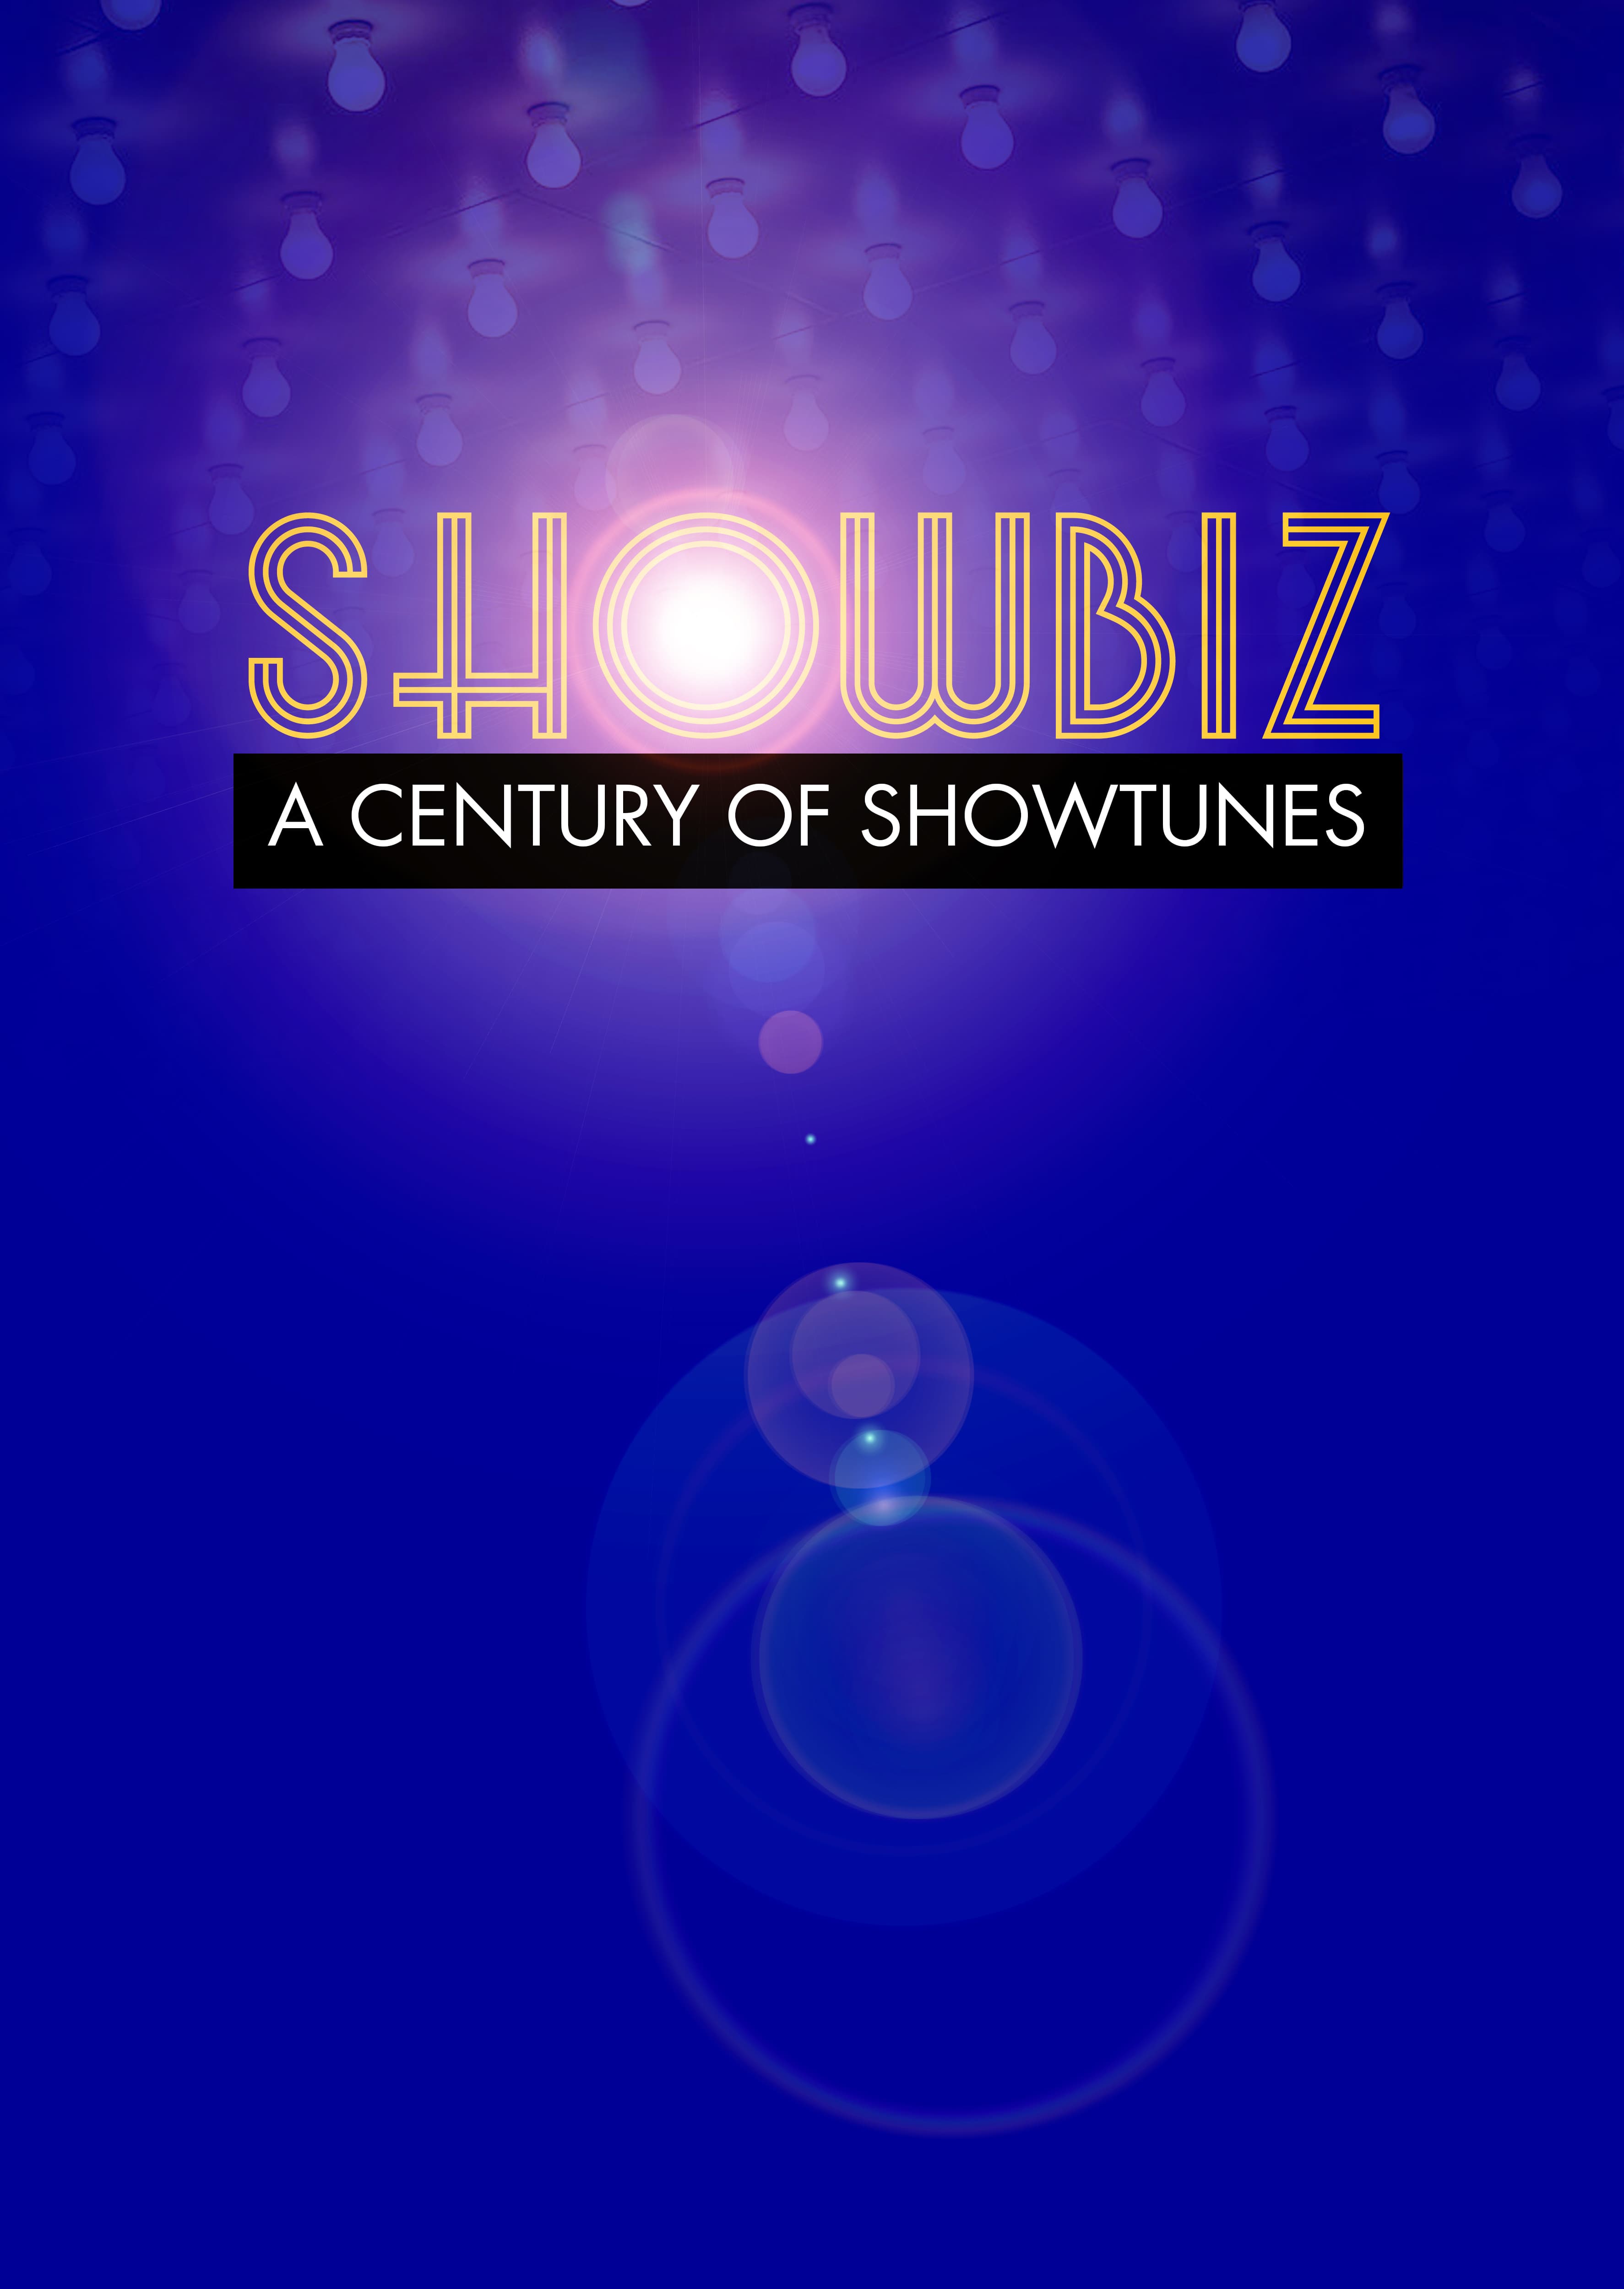 ShowBiz: A Century of Showtunes logo